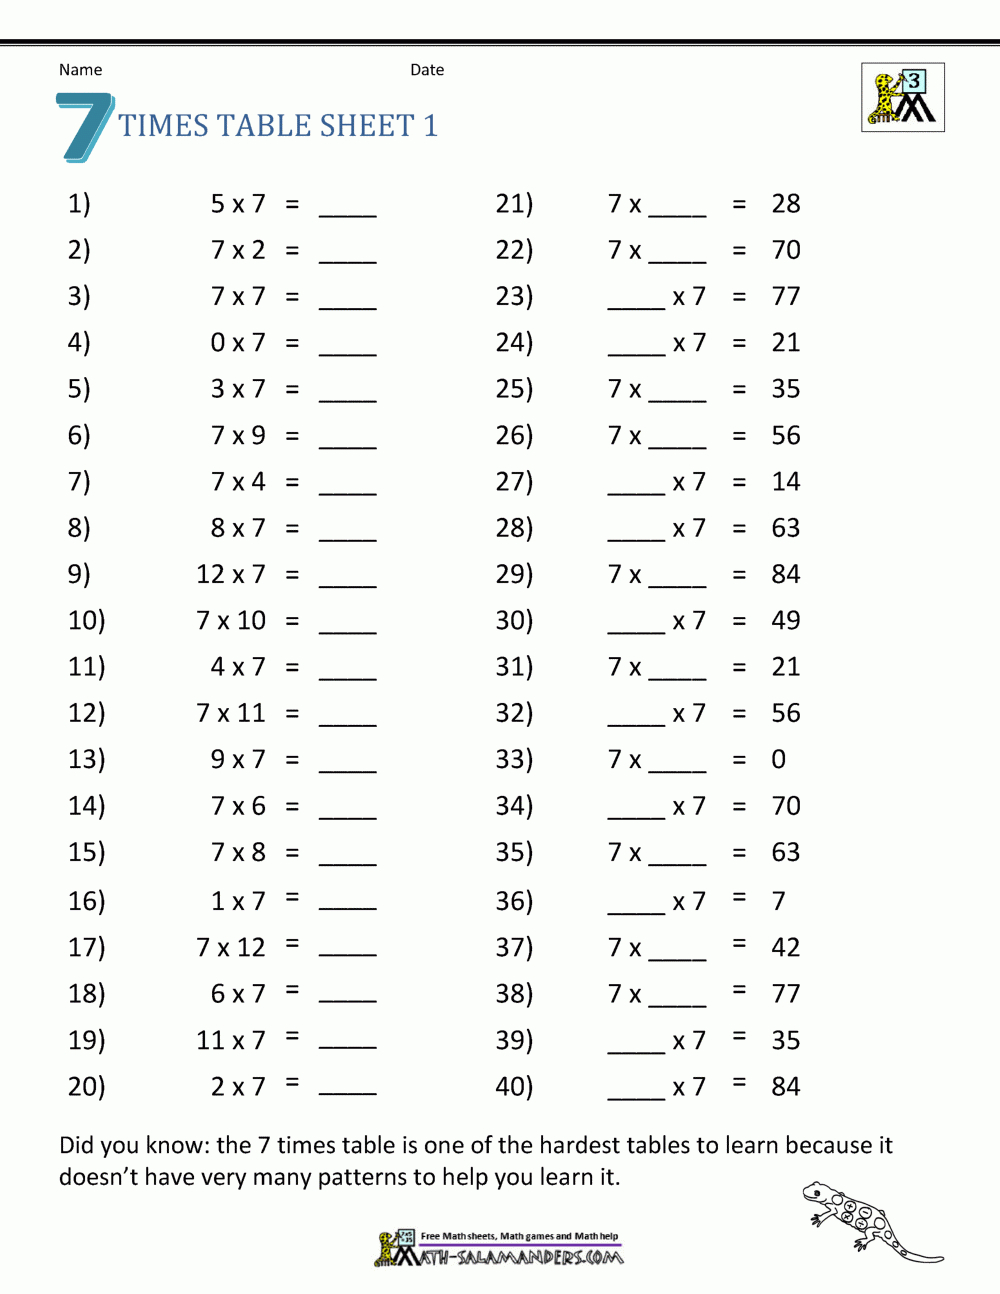 Random Multiplication Facts Worksheet